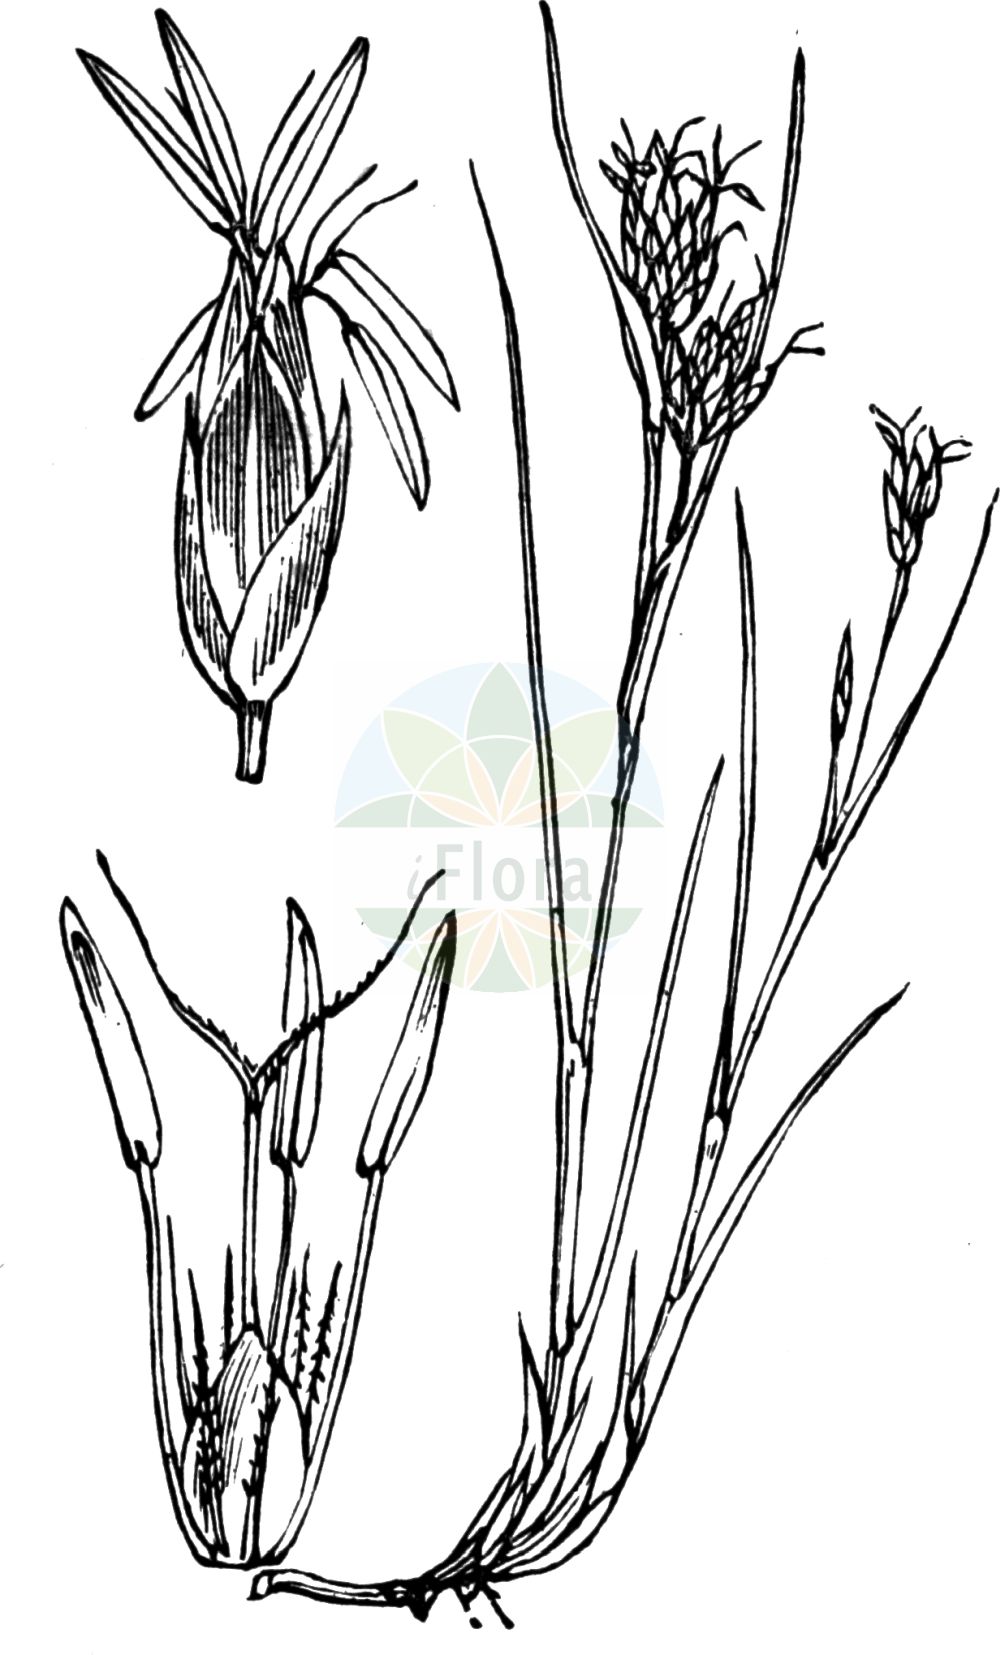 Historische Abbildung von Rhynchospora fusca (Braunes Schnabelried - Brown Beak-Sedge). Das Bild zeigt Blatt, Bluete, Frucht und Same. ---- Historical Drawing of Rhynchospora fusca (Braunes Schnabelried - Brown Beak-Sedge). The image is showing leaf, flower, fruit and seed.(Rhynchospora fusca,Braunes Schnabelried,Brown Beak-Sedge,Rhynchospora fusca,Schoenus fuscus,Braunes Schnabelried,Brown Beak-Sedge,Rhynchospora,Schnabelbinse,Beaksedge,Cyperaceae,Sauergräser,Sedge family,Blatt,Bluete,Frucht,Same,leaf,flower,fruit,seed,Fitch et al. (1880))